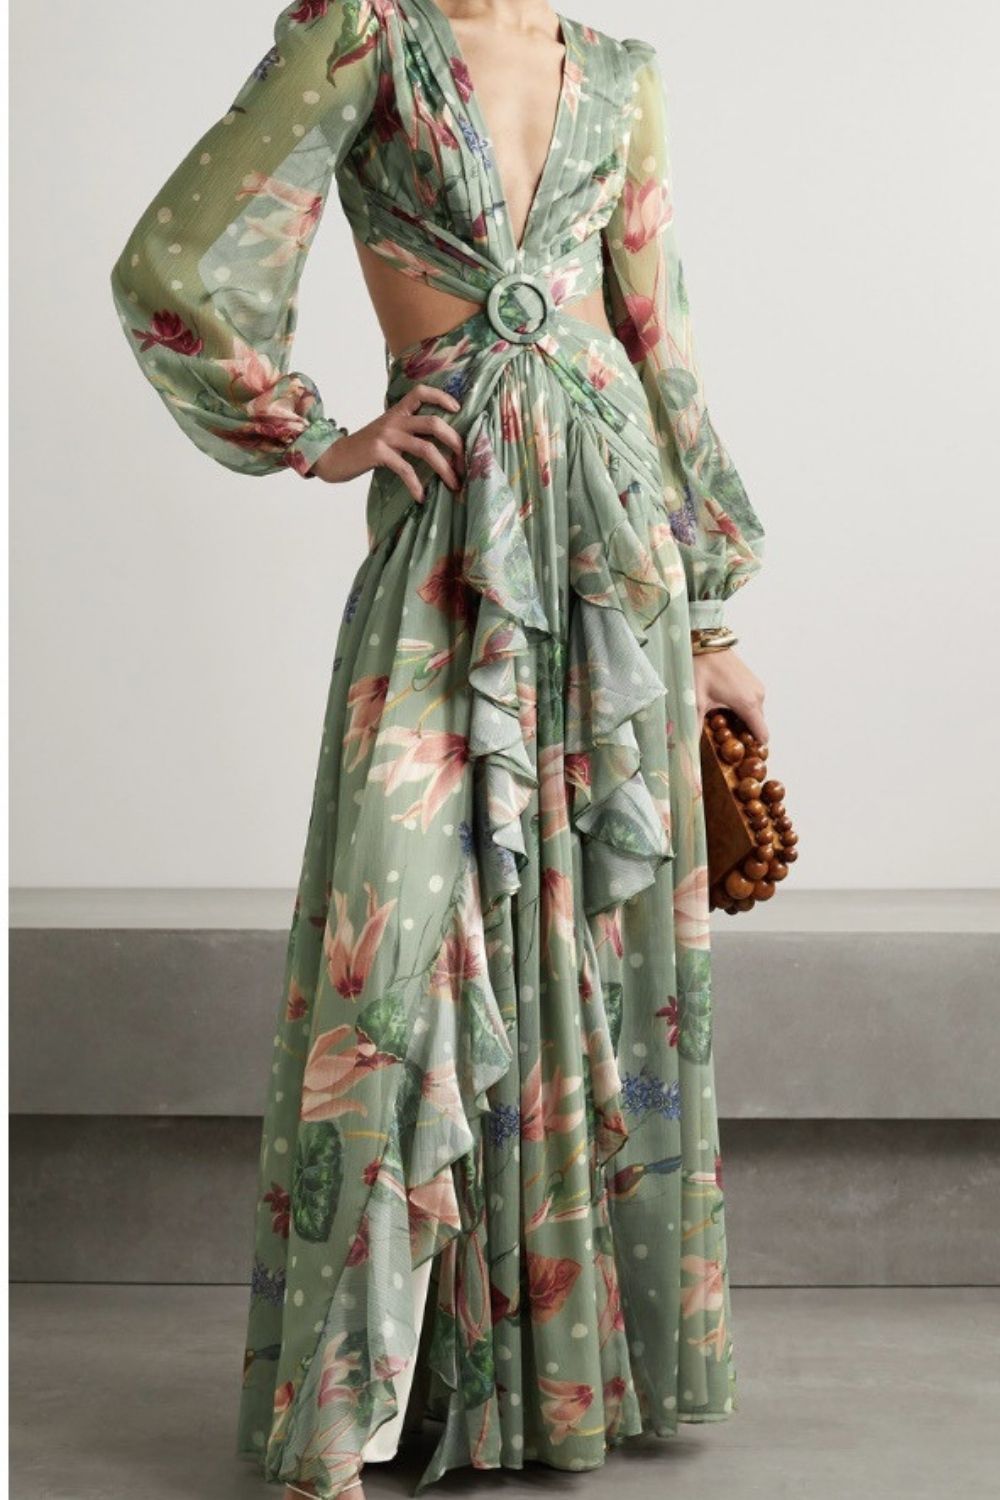 2021 Summer Autumn Floral Print Chiffon Dress Women Criss Cross Low Cut ...